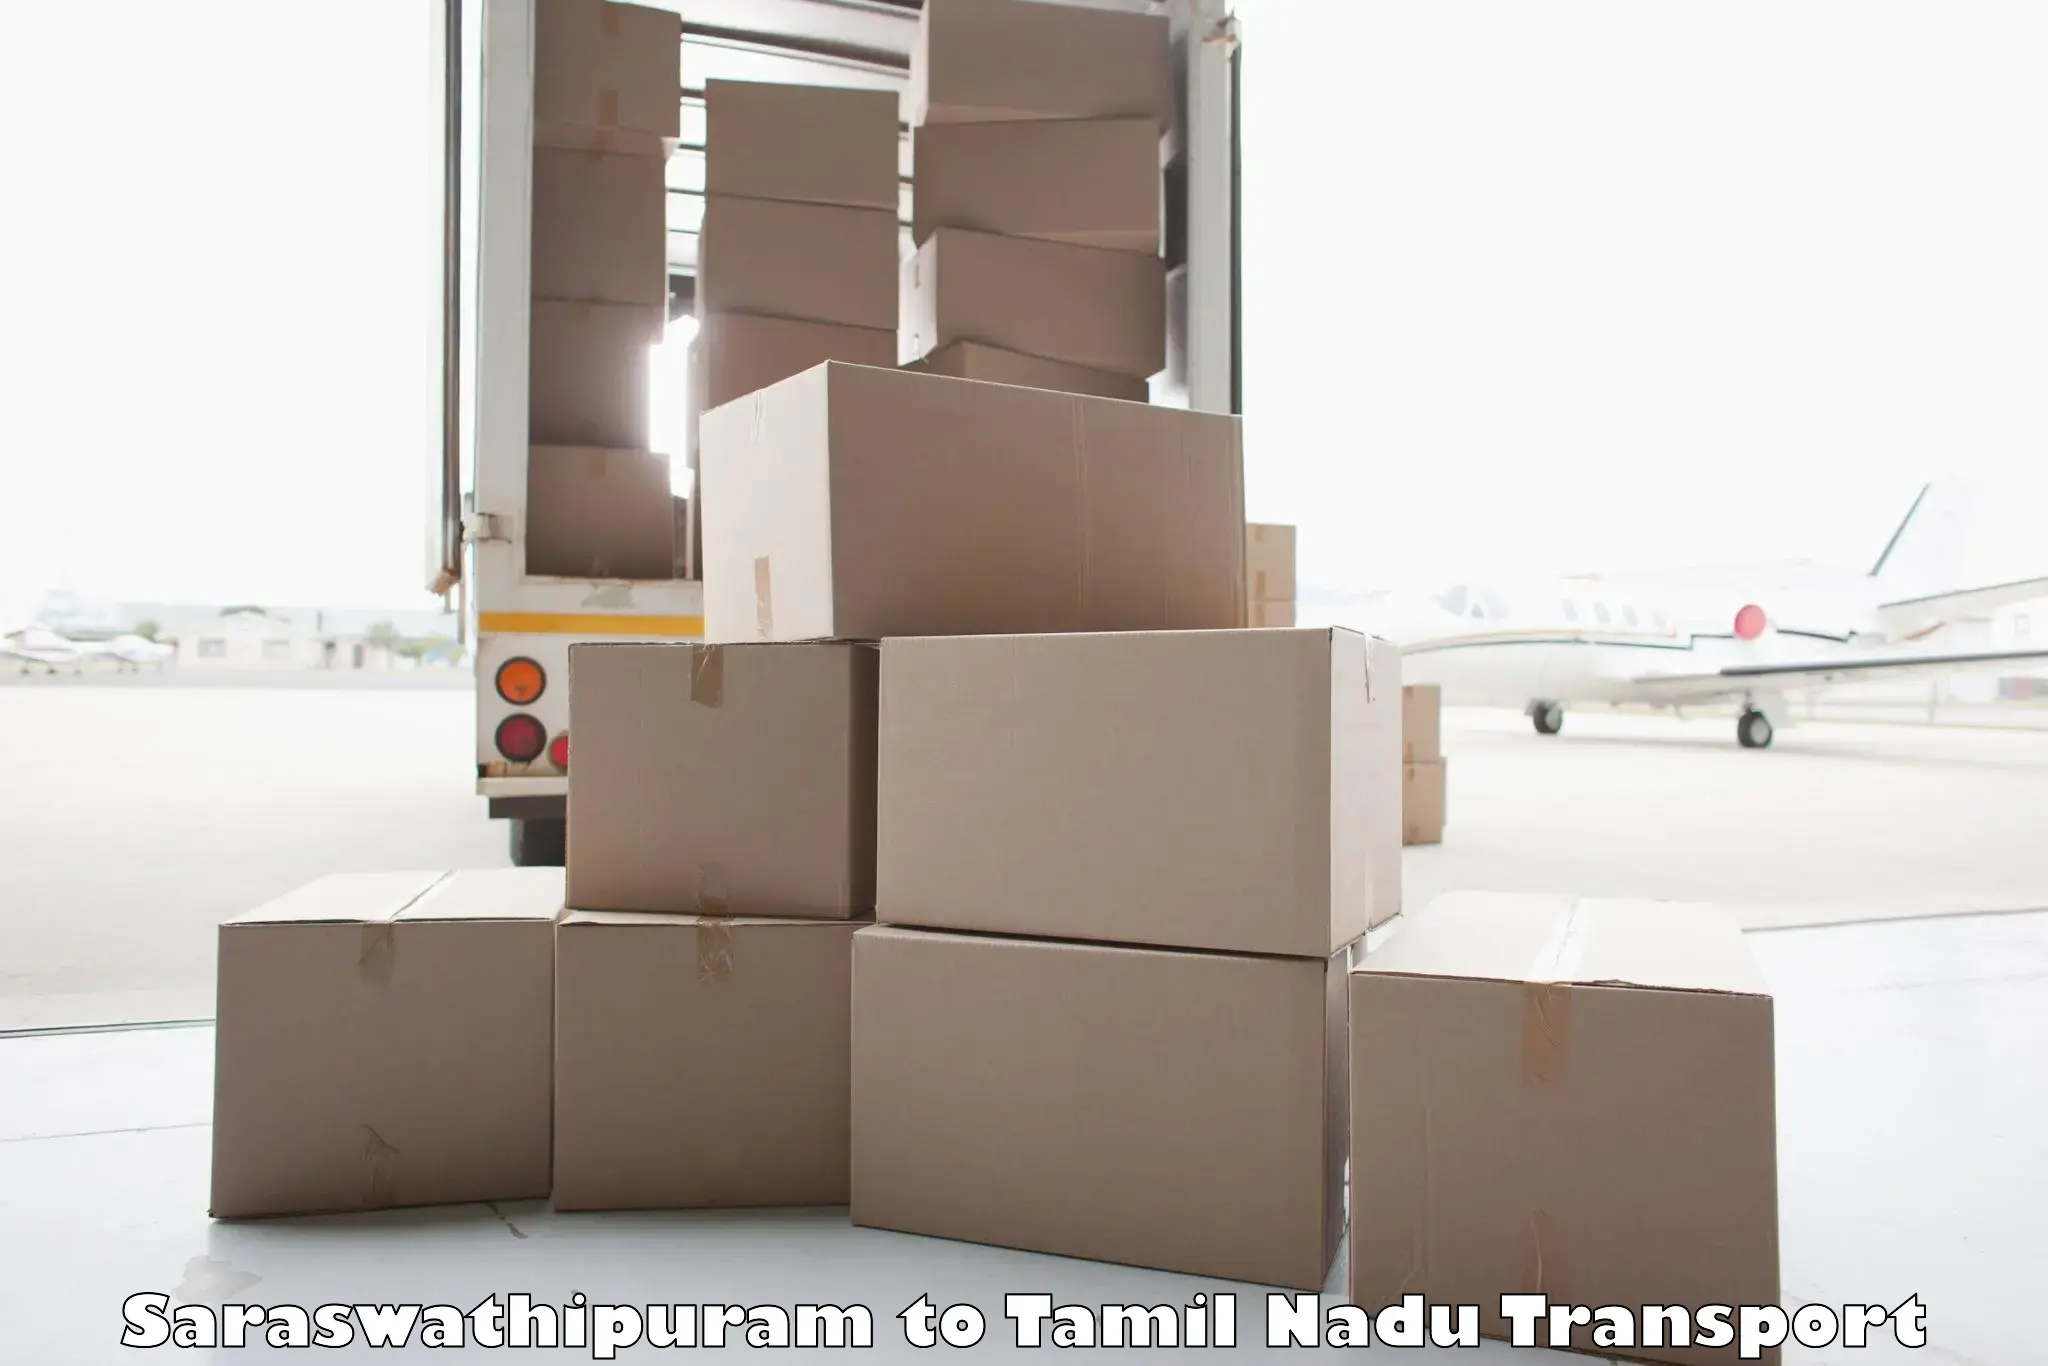 Commercial transport service Saraswathipuram to Tuticorin Port